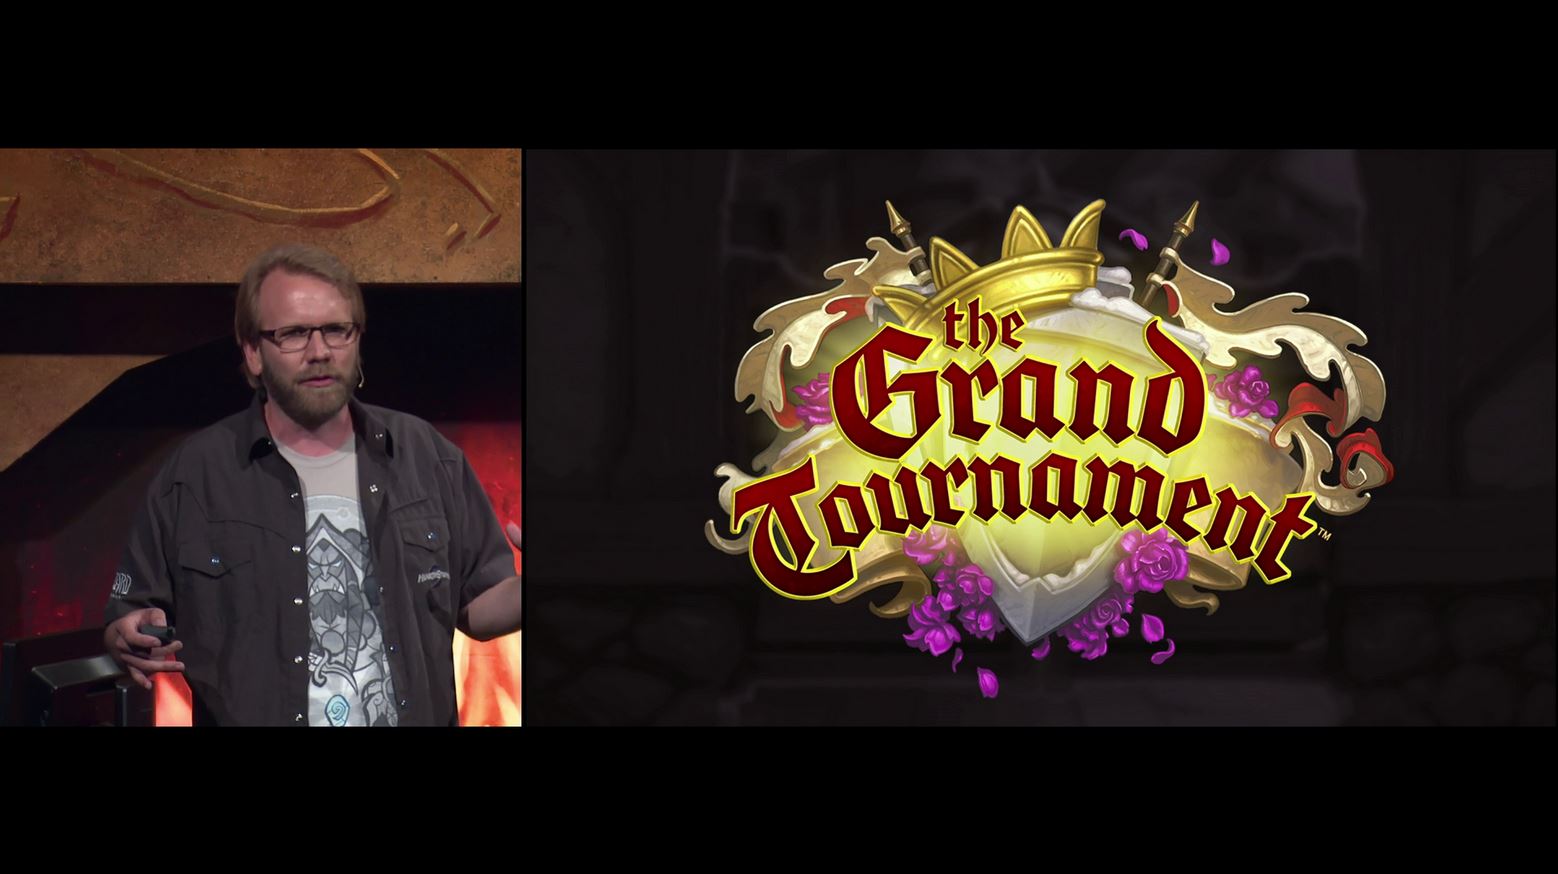 Hearthstone công bố bản mở rộng mới - The Grand Tournament